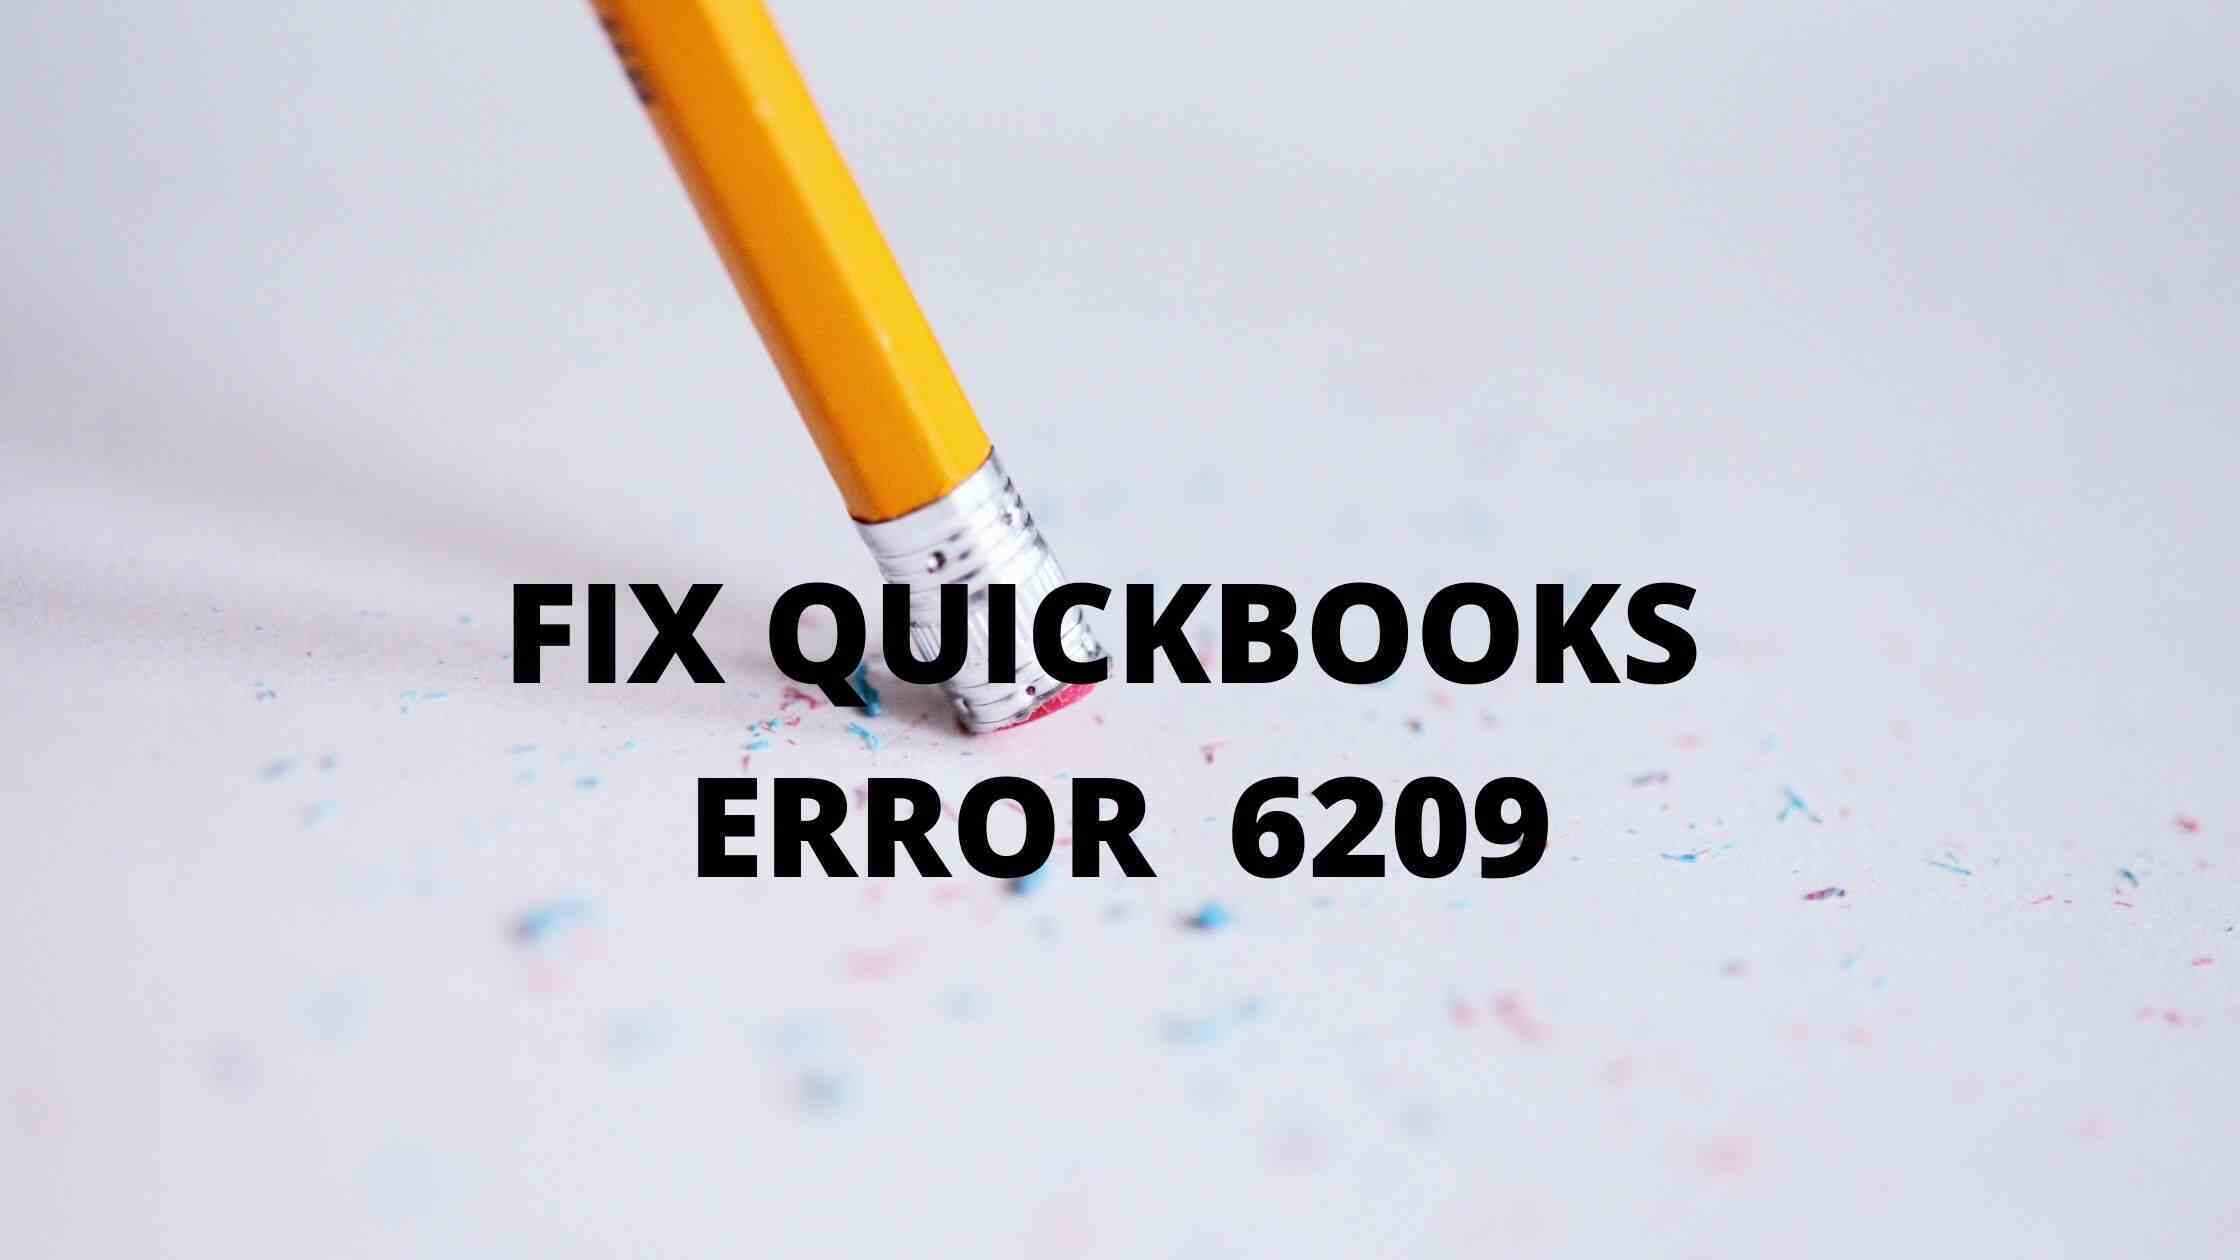 QuickBooks Error 6209